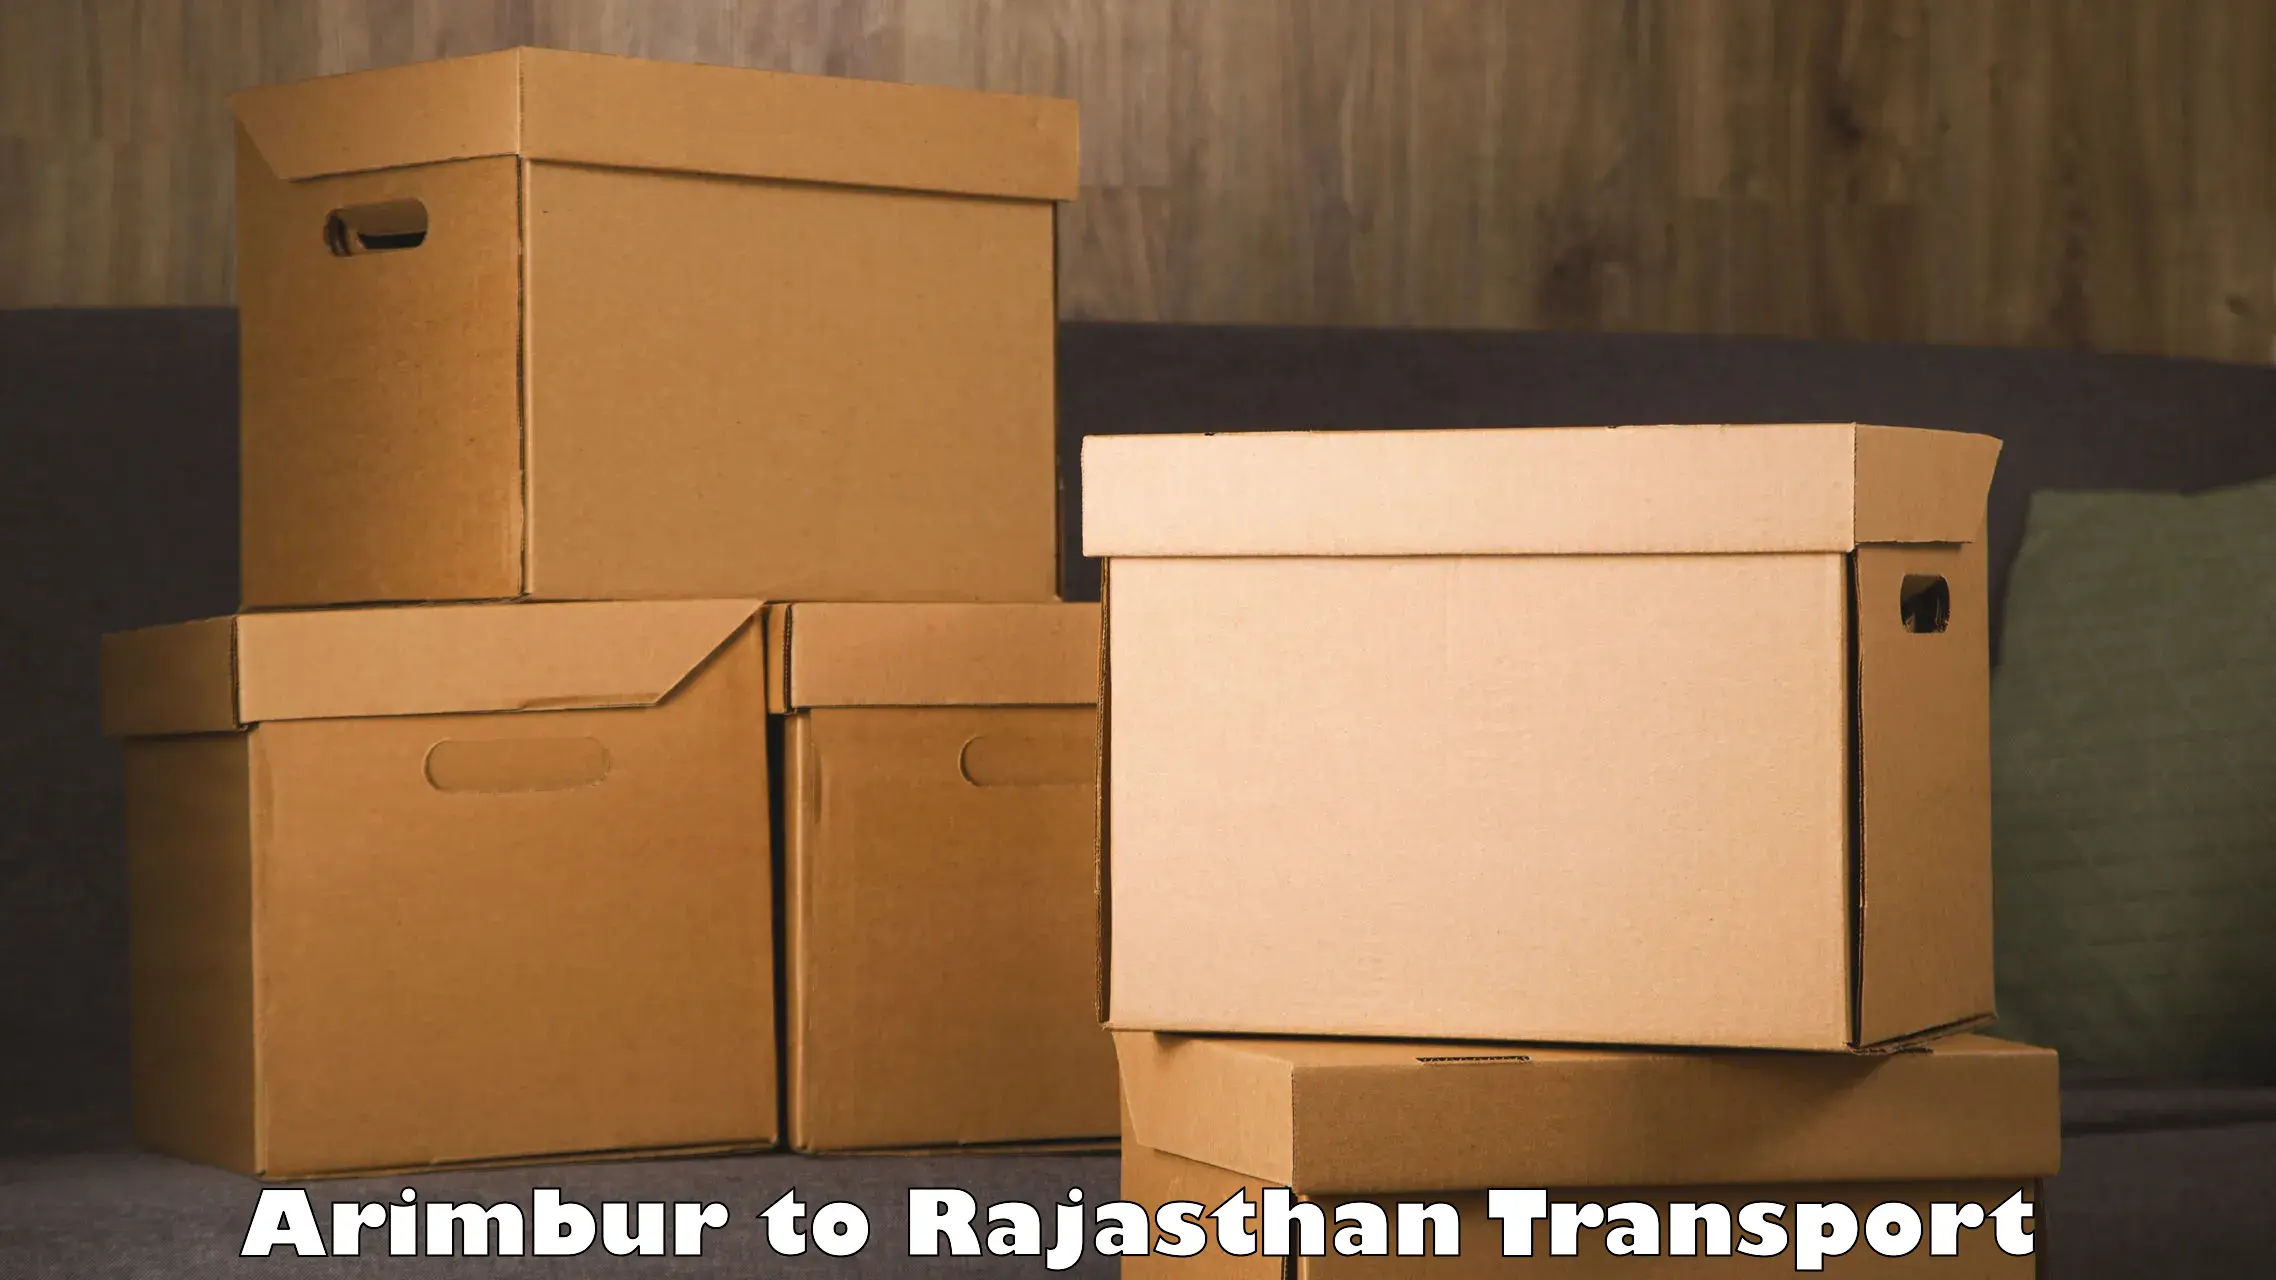 Container transport service Arimbur to Nimbahera